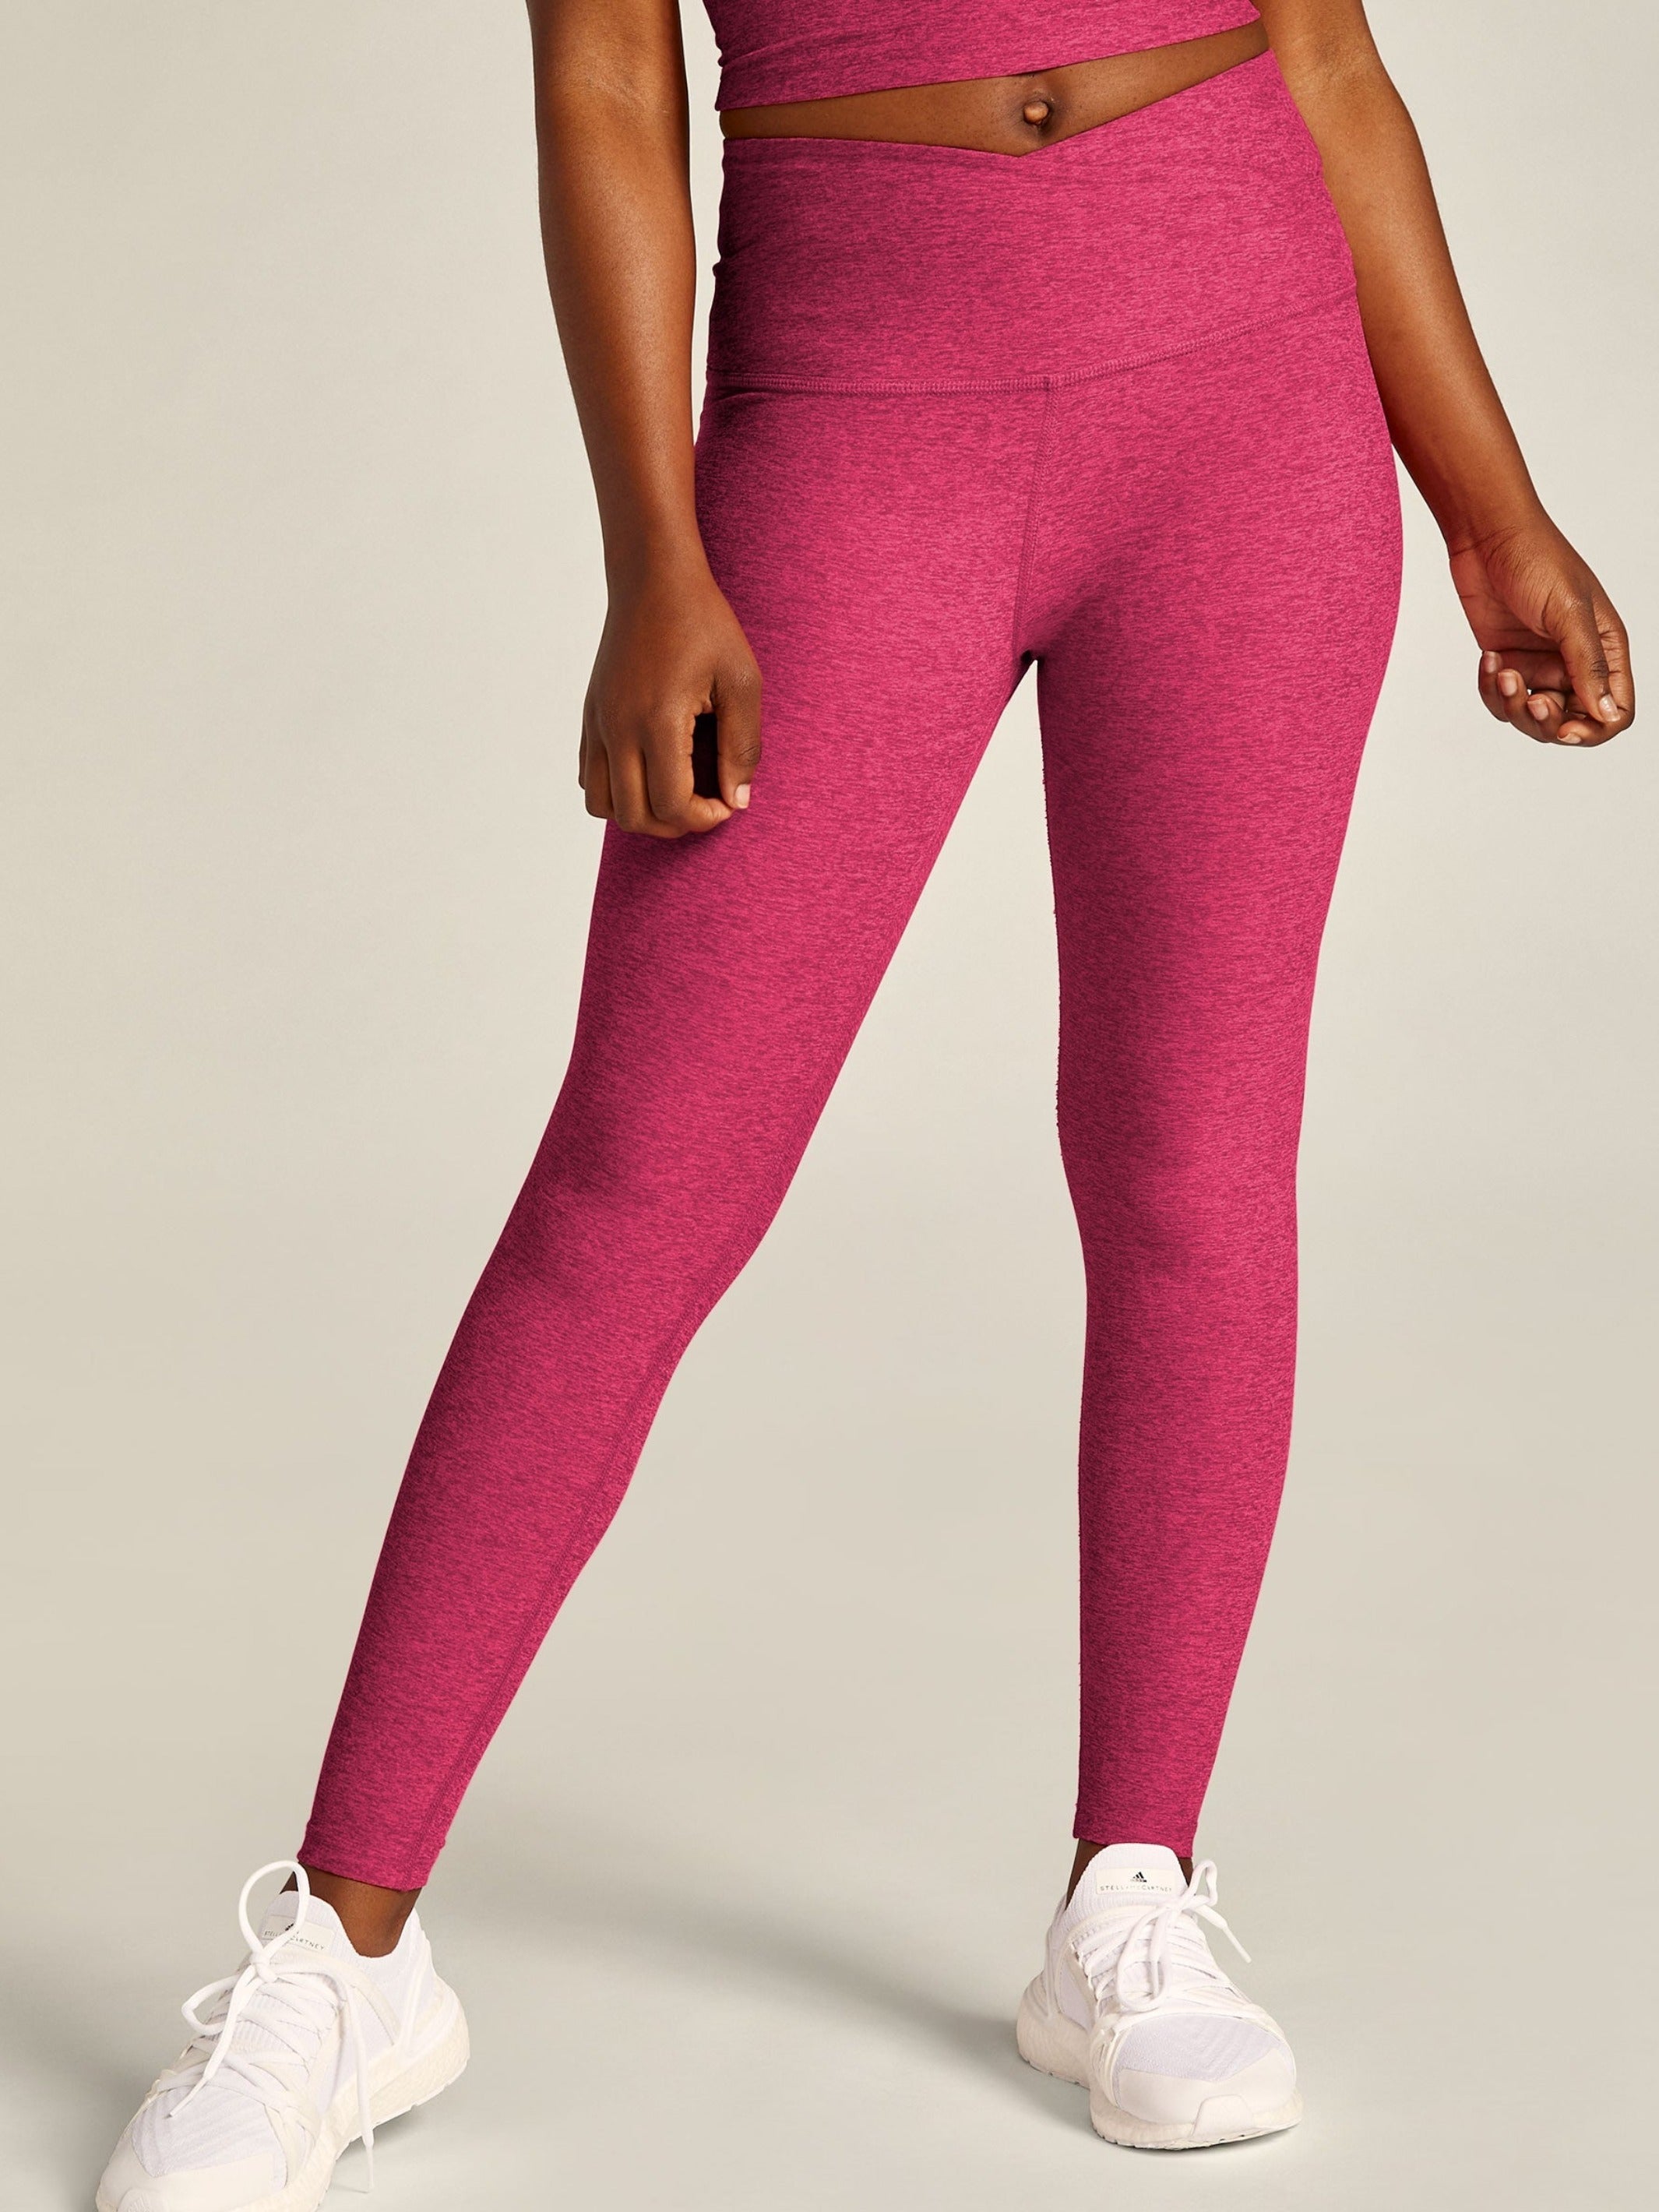 $99 Beyond Yoga Women Green Leisure High-Waist Midi Leggings Pants Size XS